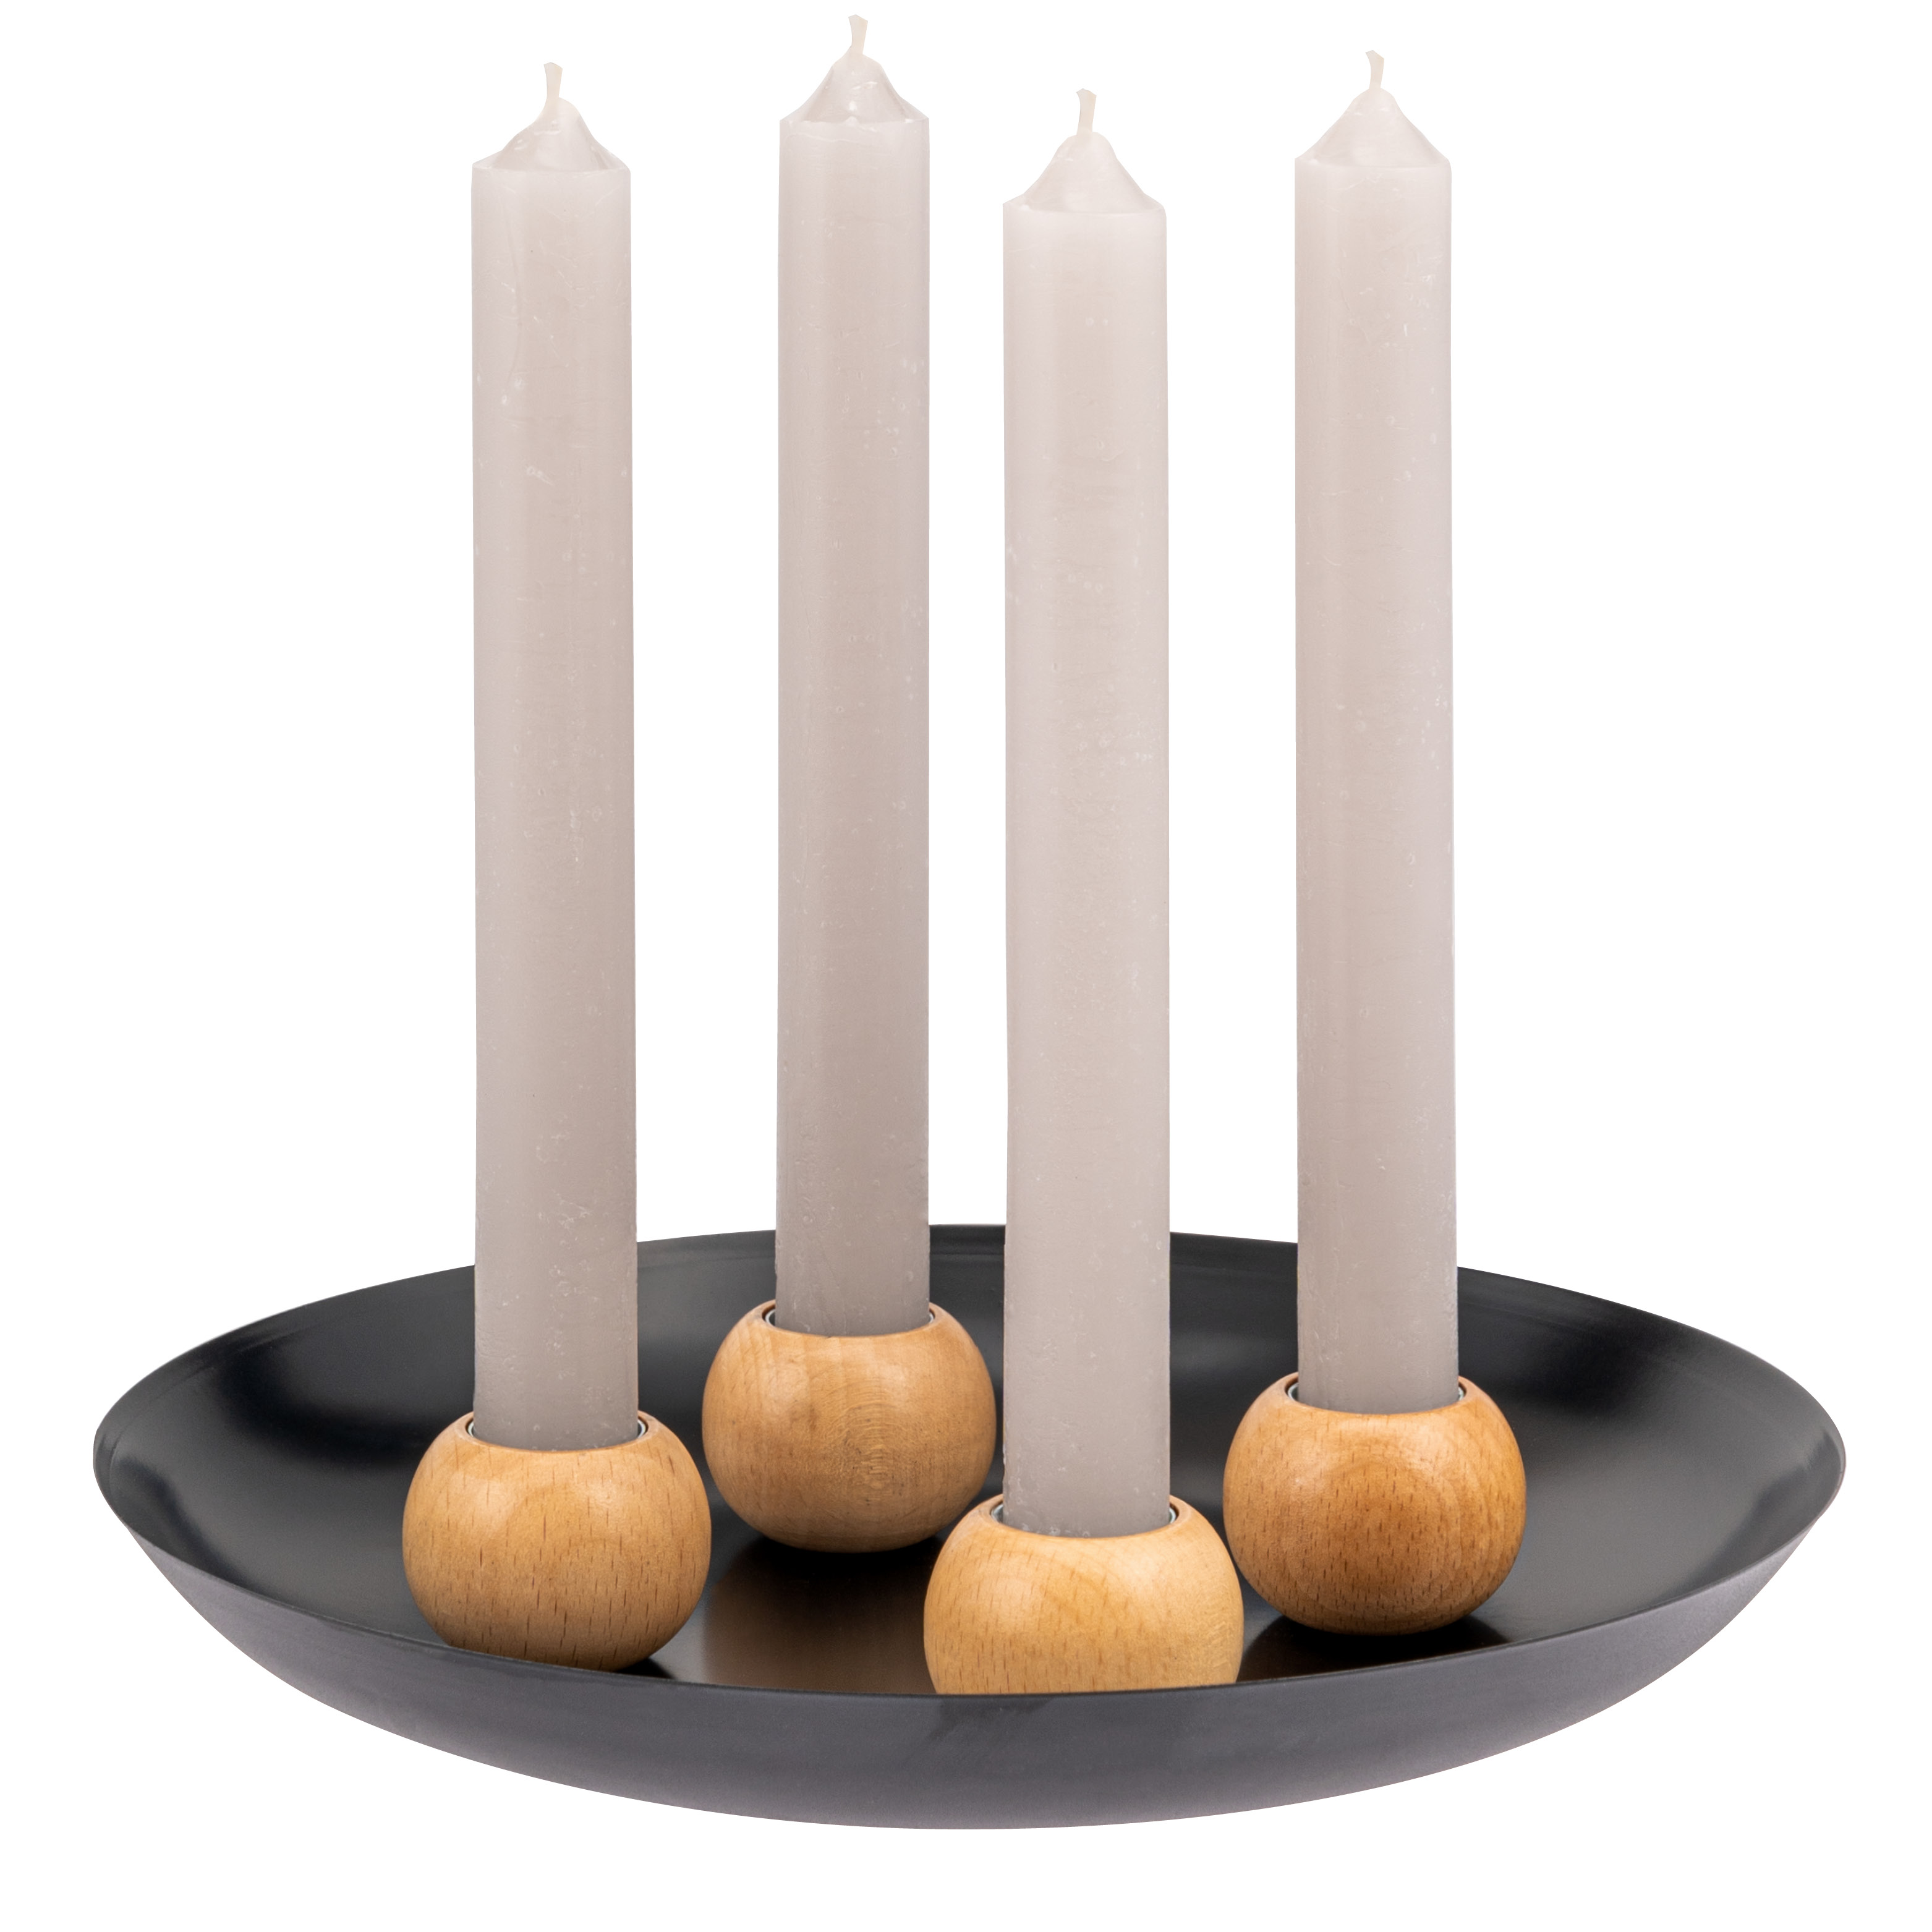 bremermann Kerzentablett mit 4 magnetischen Kerzenhaltern für Stabkerzen, Kerzenständer Metall/Holz, schwarz